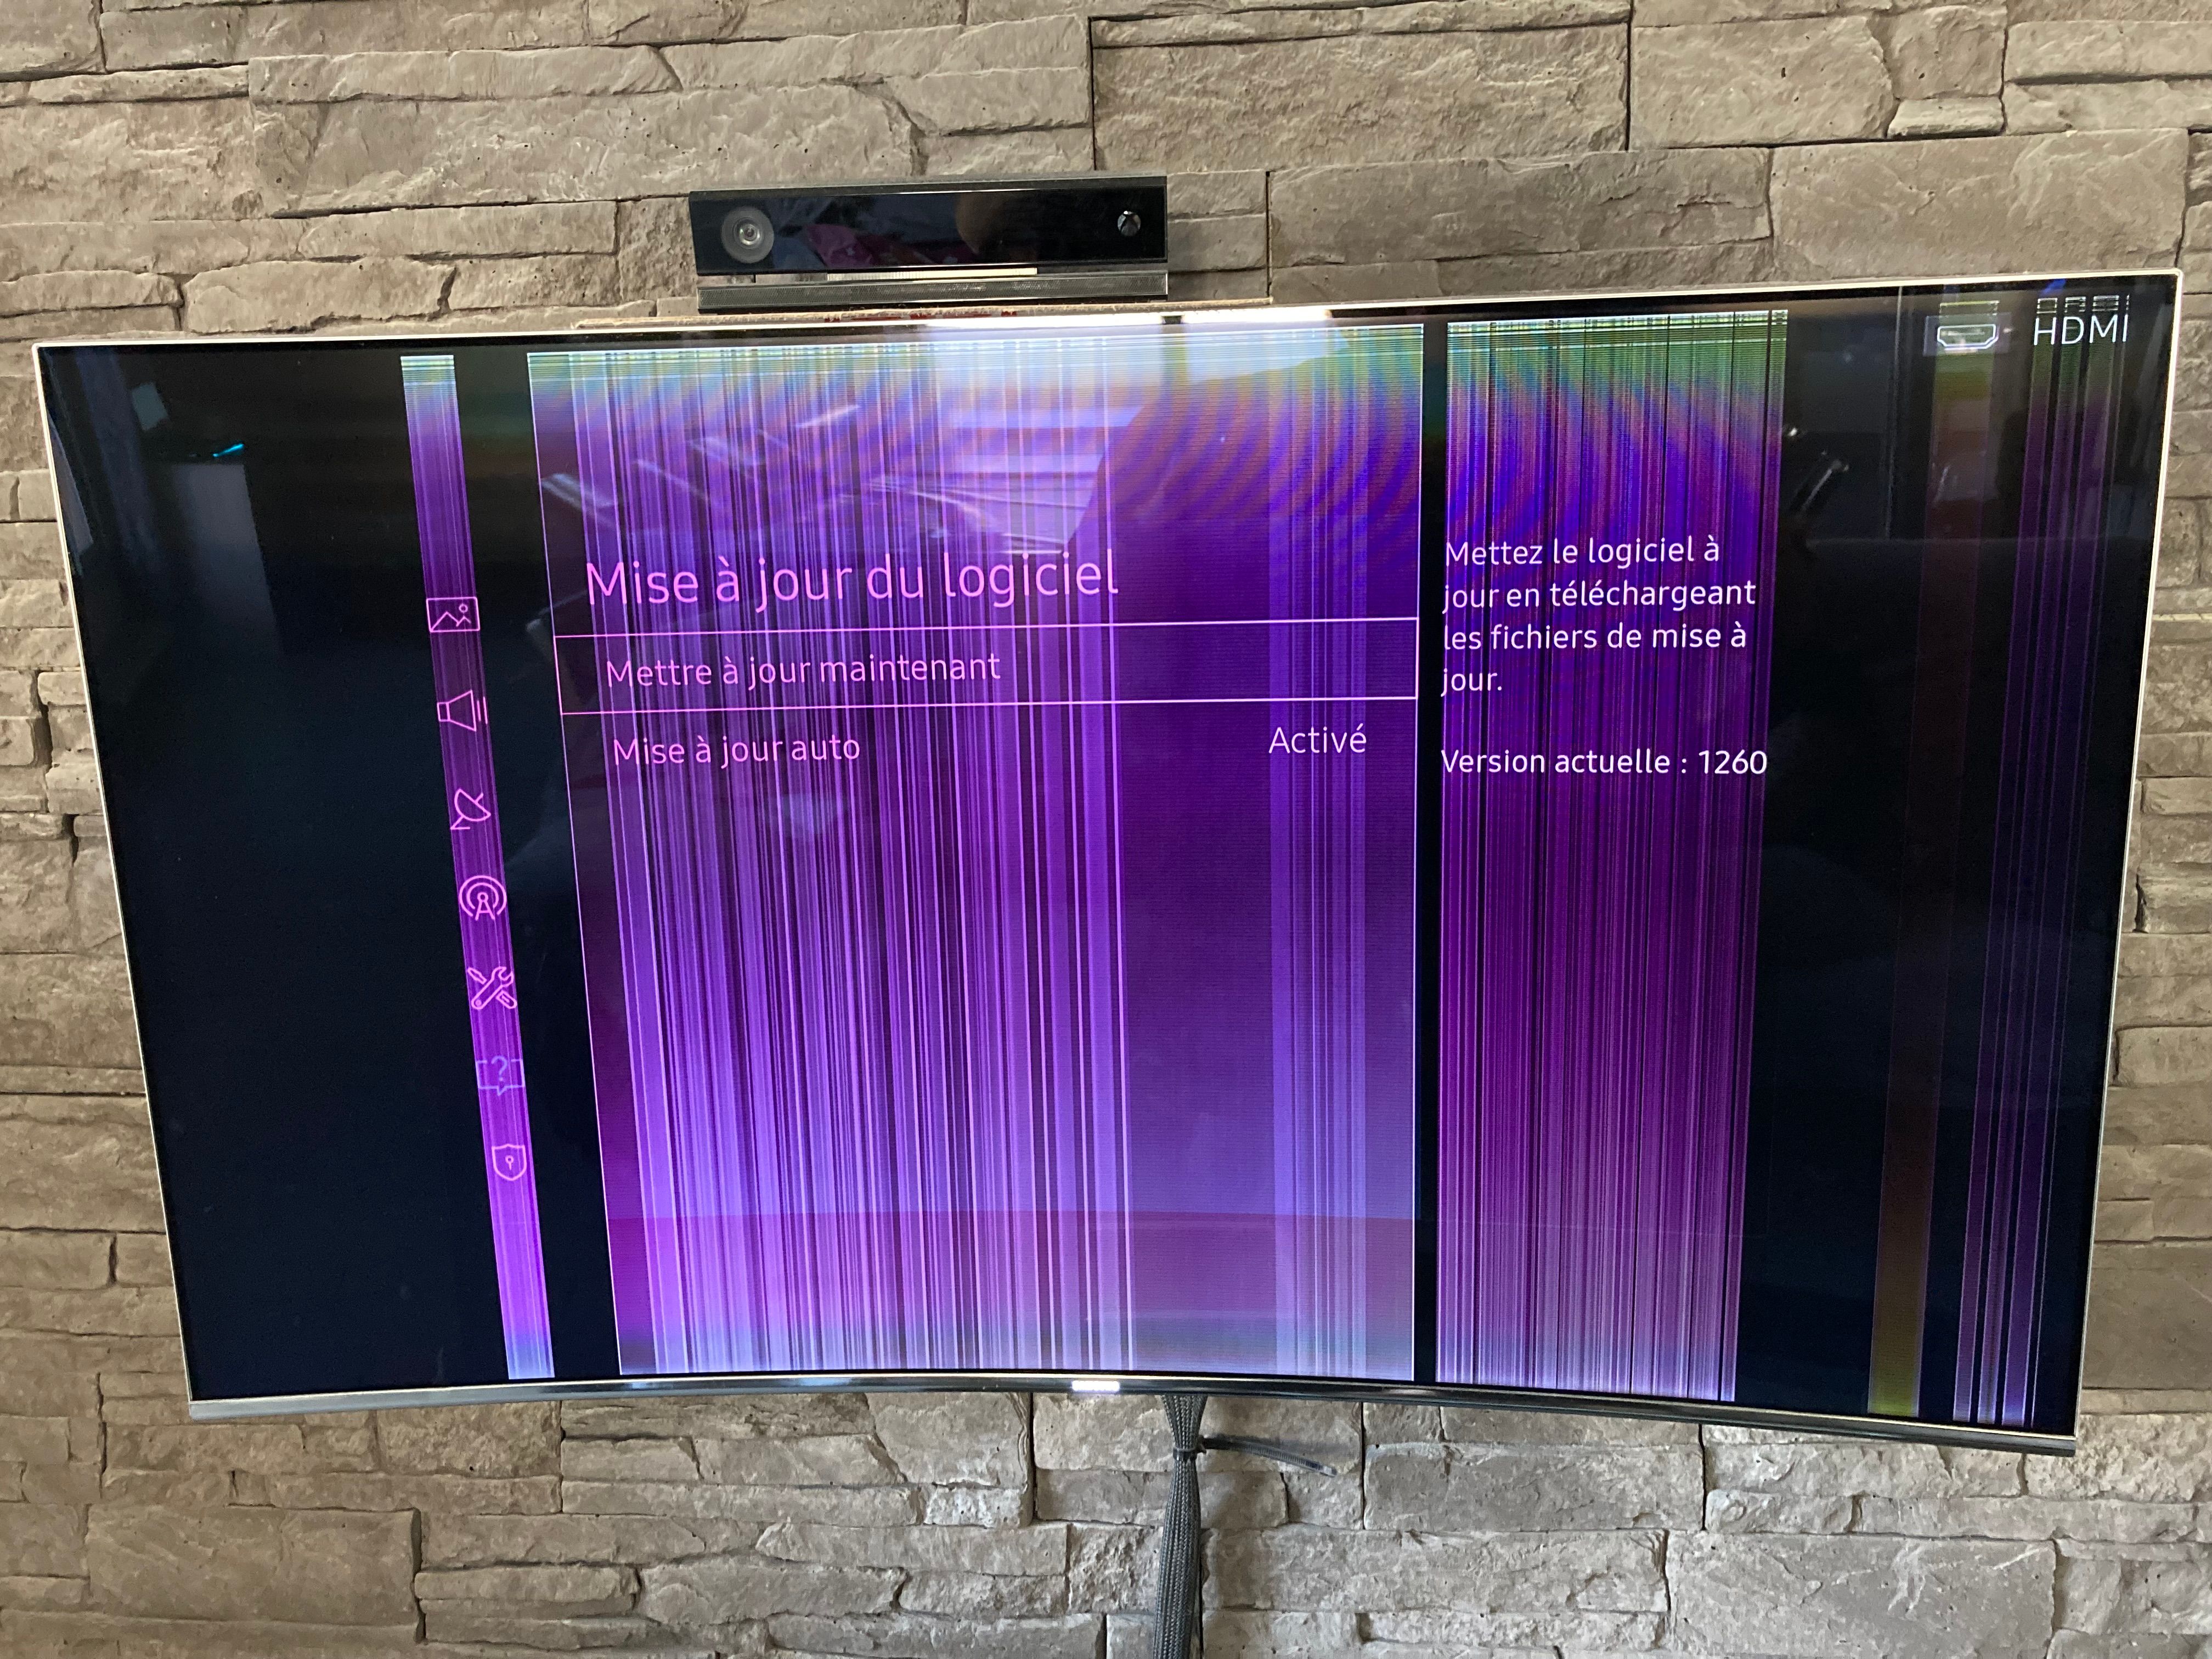 Résolu : TV UE49KS7500 Lignes verticales sur l'écran - Samsung Community